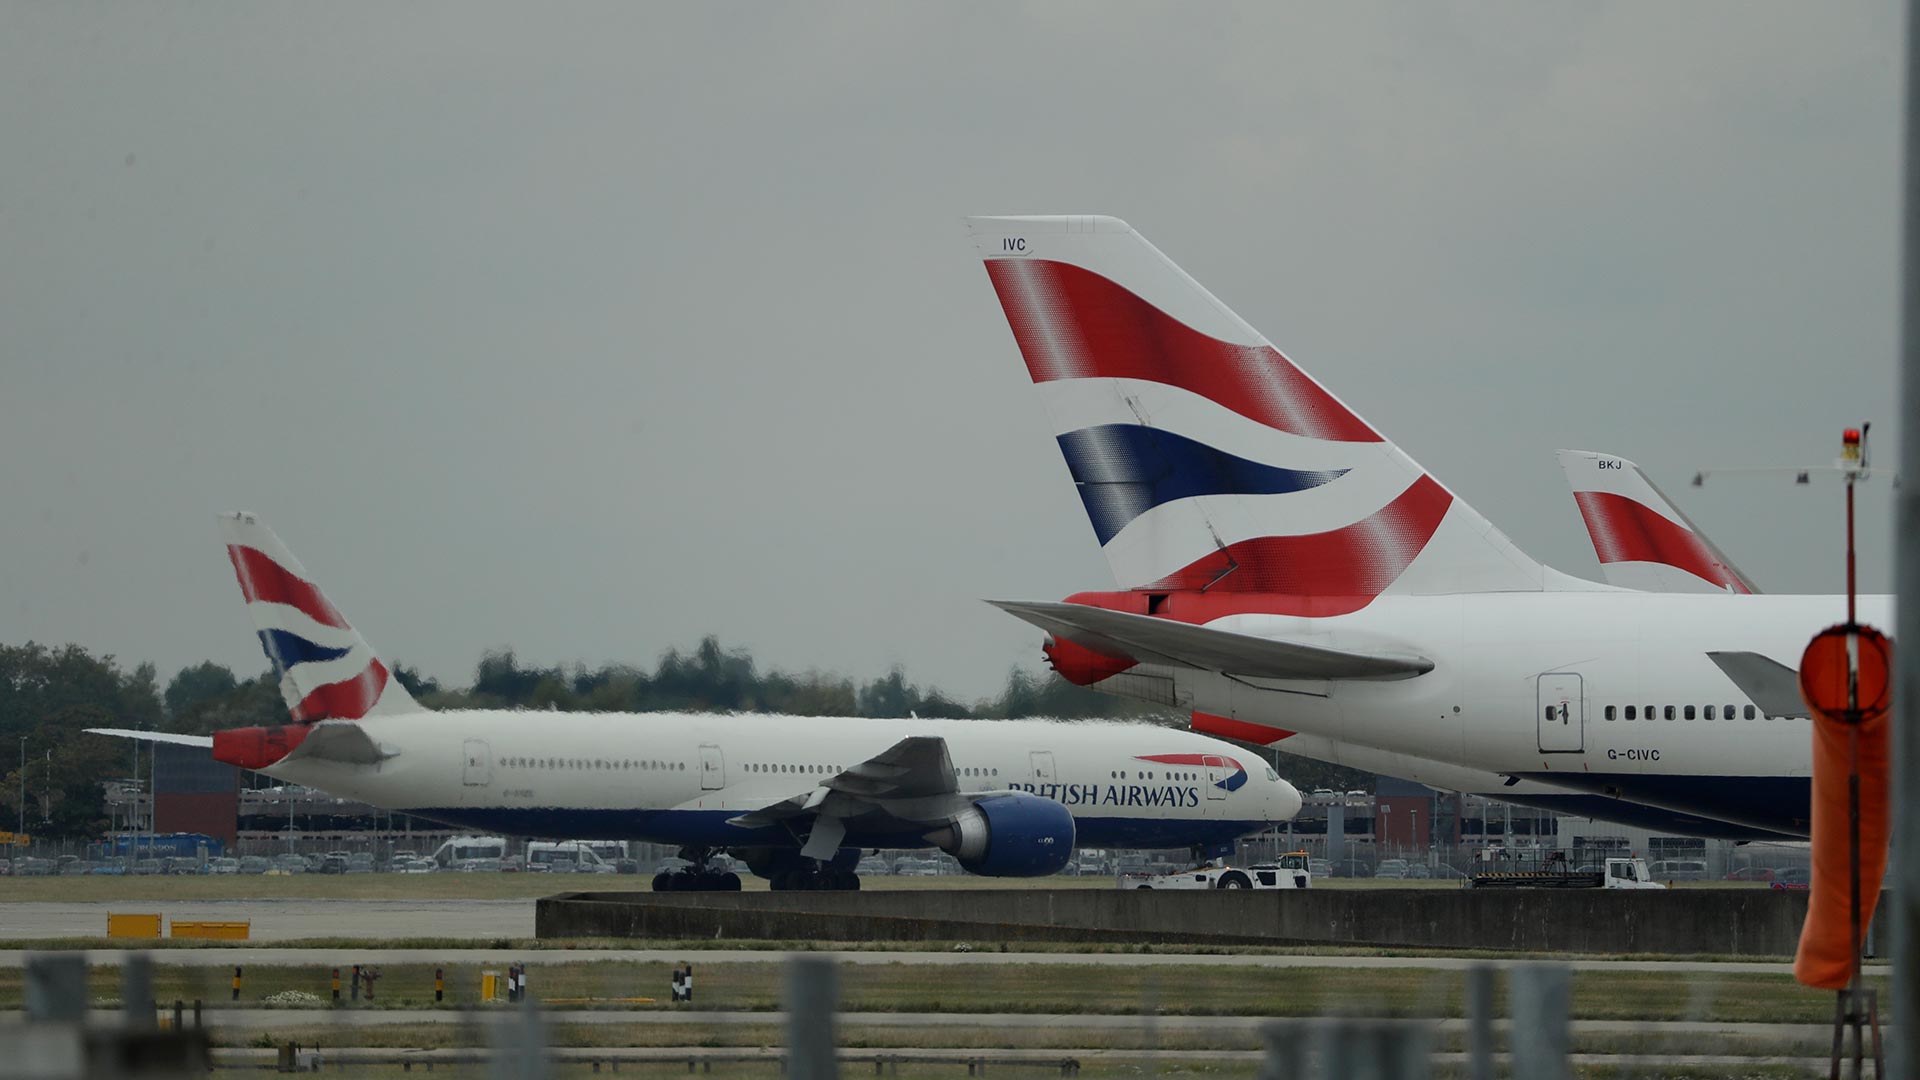 Una huelga de pilotos obliga a British Airways a anular casi todos sus vuelos